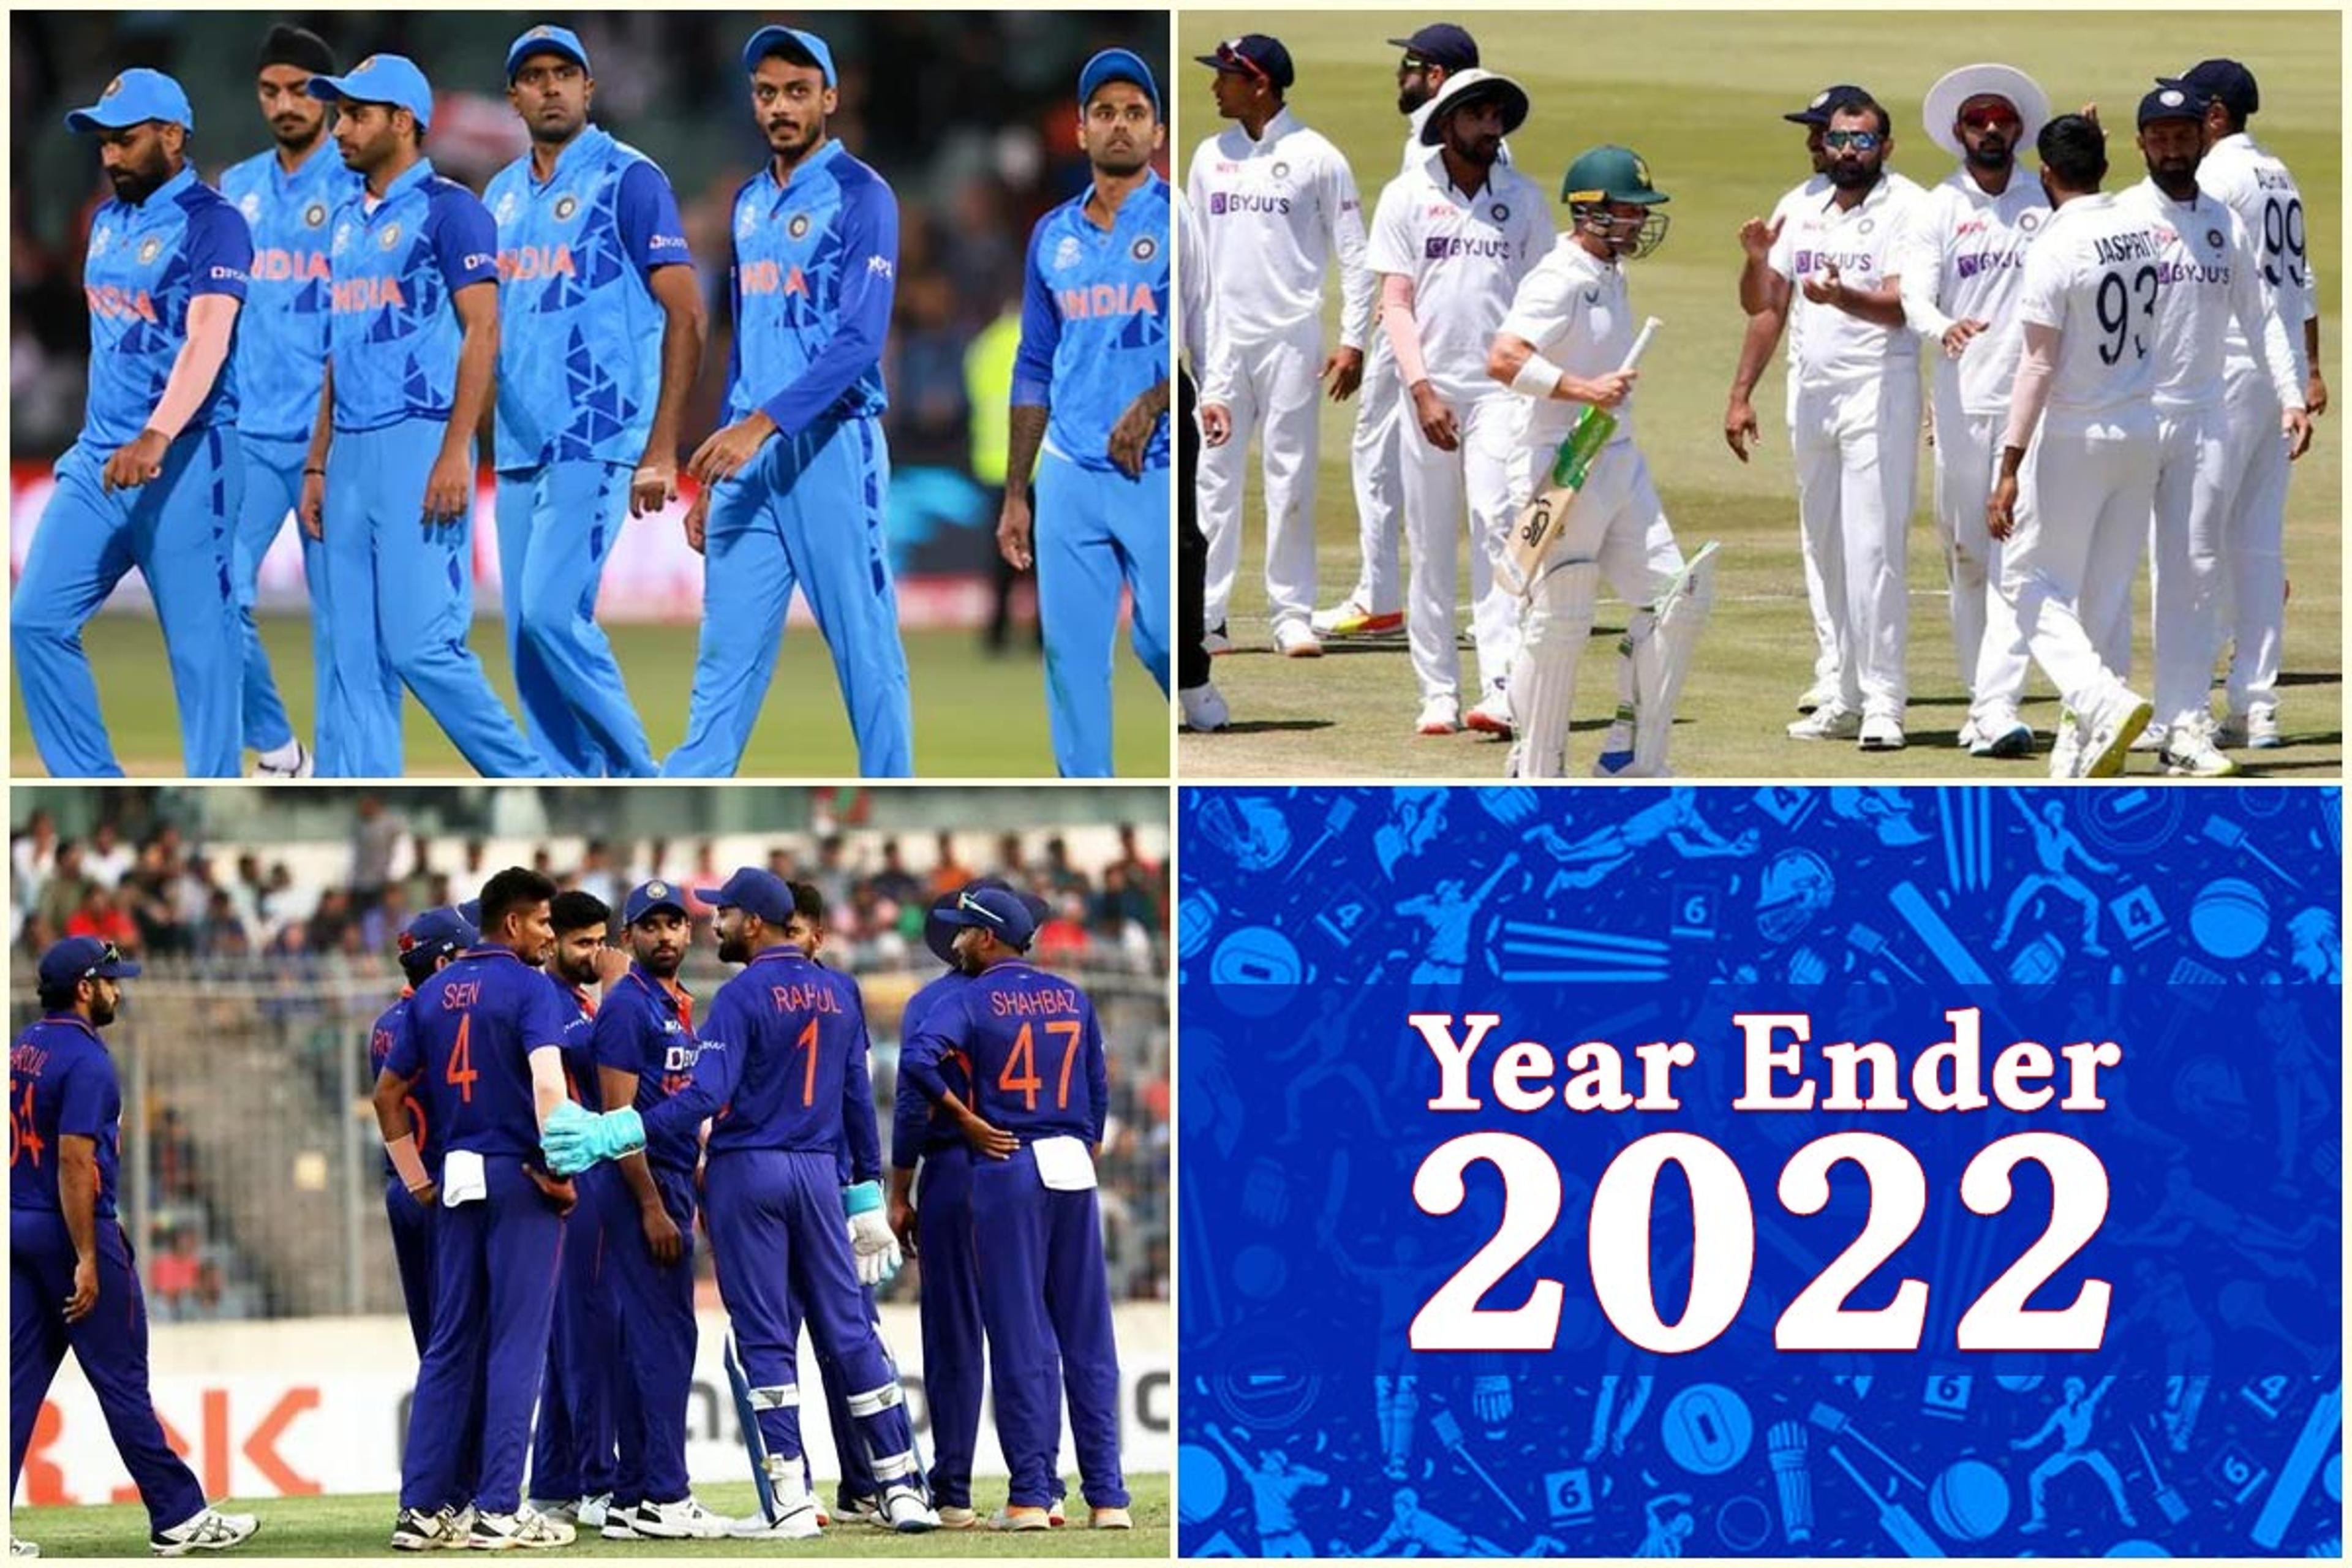 Year Ender 2022 : इस साल क्रिकेट के तीनों फॉर्मेट में बड़े मौकों पर फेल रही टीम इंडिया, देखें कैसा रहा प्रदर्शन